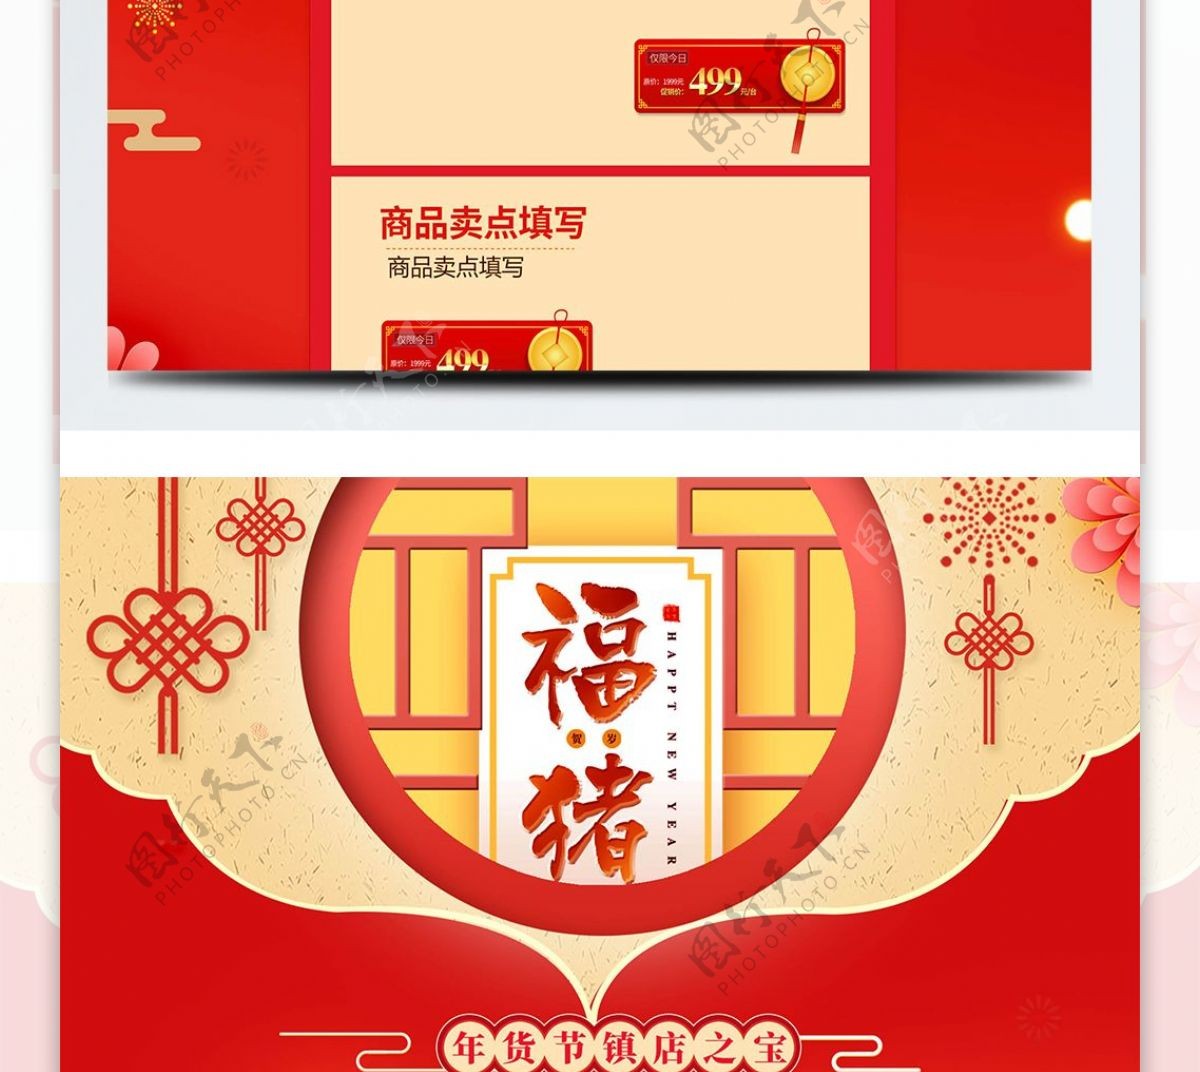 新年福猪化妆用品促销电商淘宝首页模版